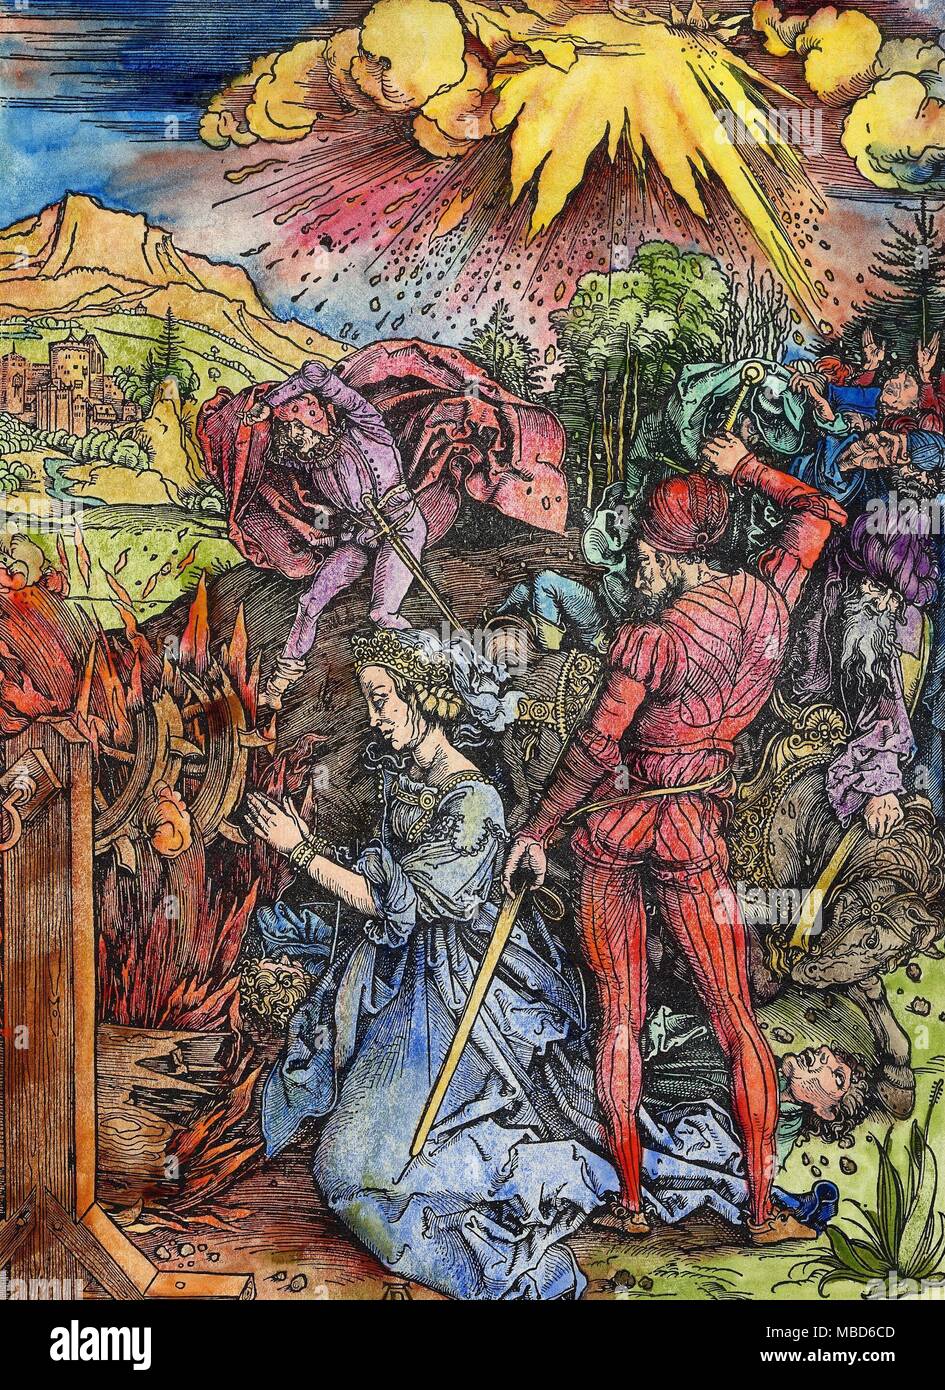 Les symboles - LA TORTURE - luminaire - la gravure sur bois de Dürer Albrecht SAINTS représentant le artyrdom "de Sainte Catherine d'Alexandrie". Elle avait été condamné à mort pour avoir refusé d'abjurer sa foi, et qui a refusé le mariage avec Maxence. Premièrement, les bourreaux avaient mis sur une roue à pointes, qui était de déchirer la chair de son corps, mais une terrible tempête de grêle, avec des éclairs de feuille a été envoyé par Dieu, et l'instrument de torture a été frappé et consommé dans les flammes. Dürer représente l'horreur devant ce phénomène étrange, envoyé par le ciel. Plus tard (et c'est le moment représenté dans l'foregro Banque D'Images